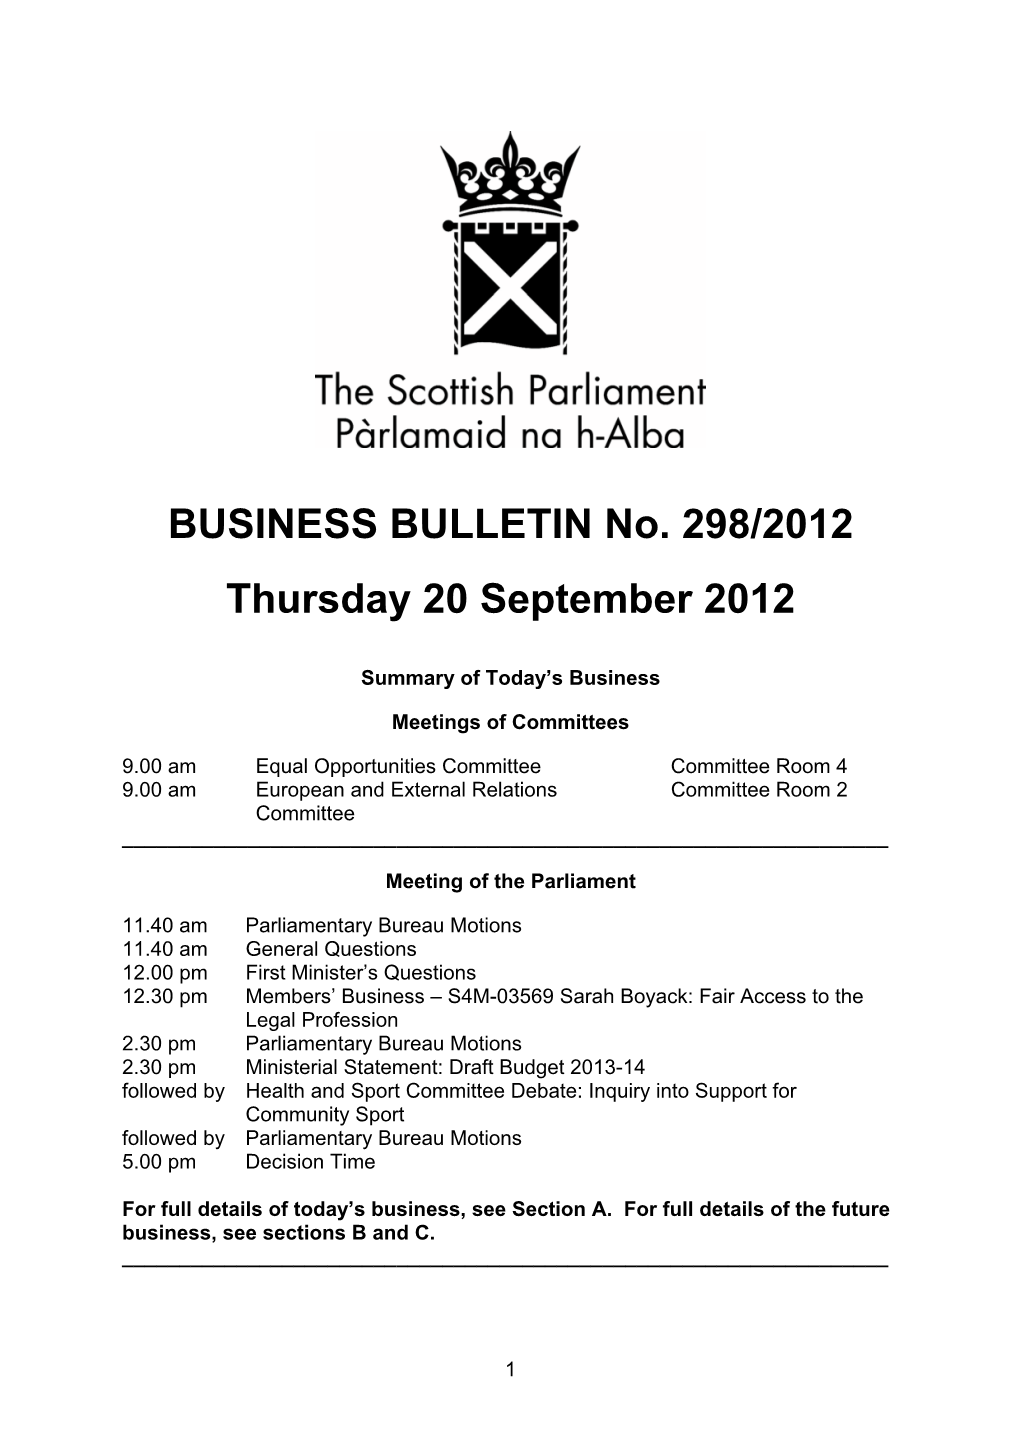 BUSINESS BULLETIN No. 298/2012 Thursday 20 September 2012